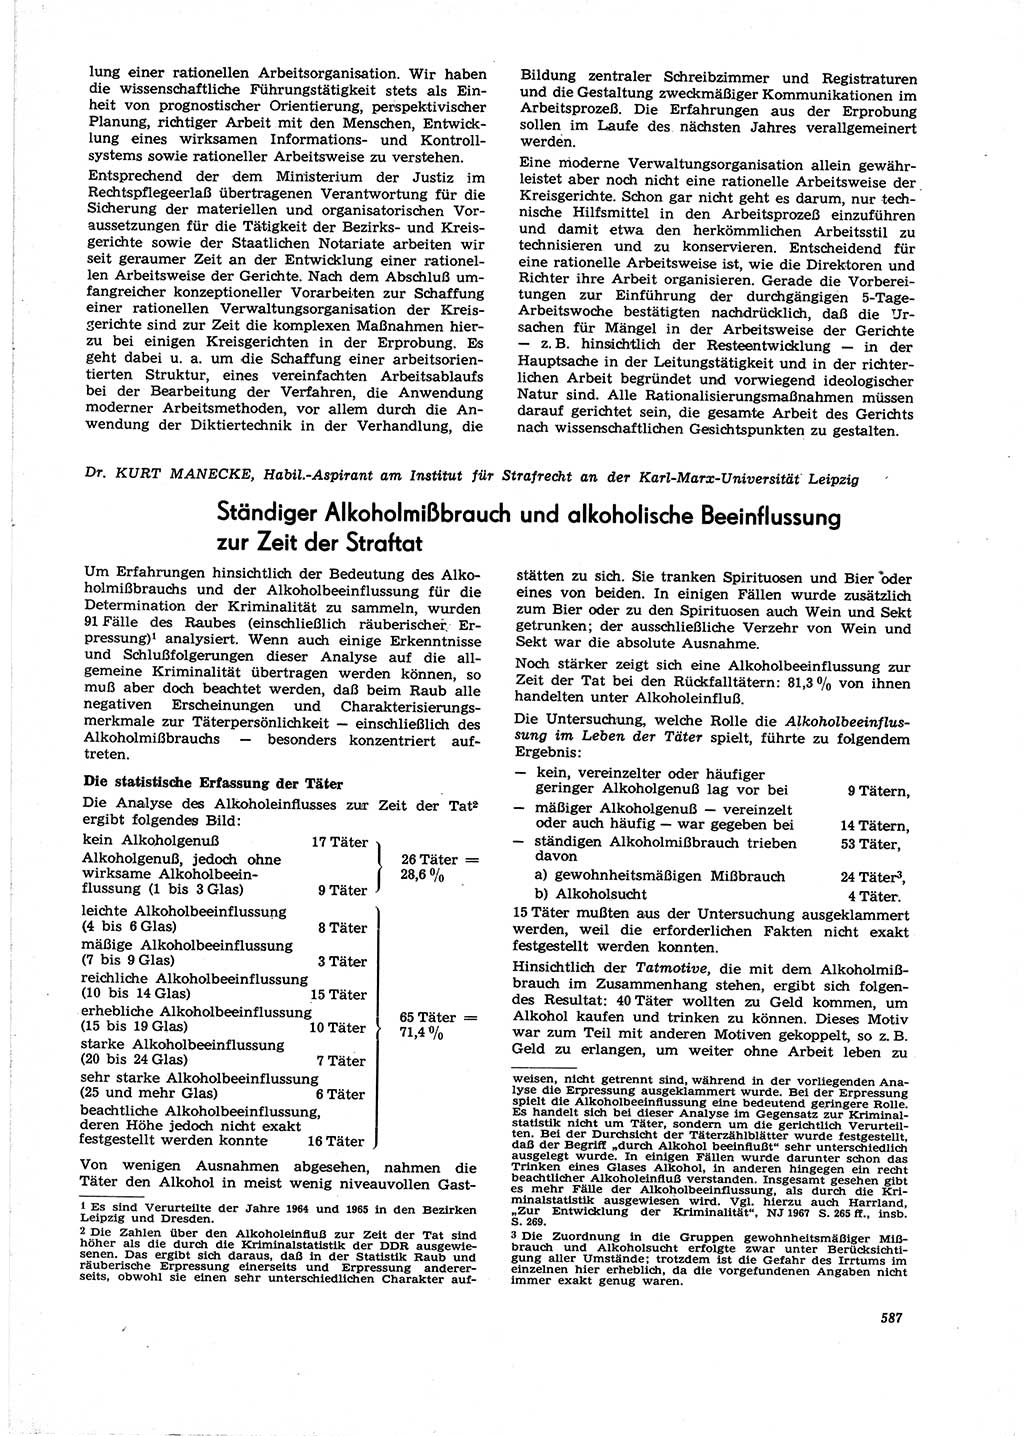 Neue Justiz (NJ), Zeitschrift für Recht und Rechtswissenschaft [Deutsche Demokratische Republik (DDR)], 21. Jahrgang 1967, Seite 587 (NJ DDR 1967, S. 587)